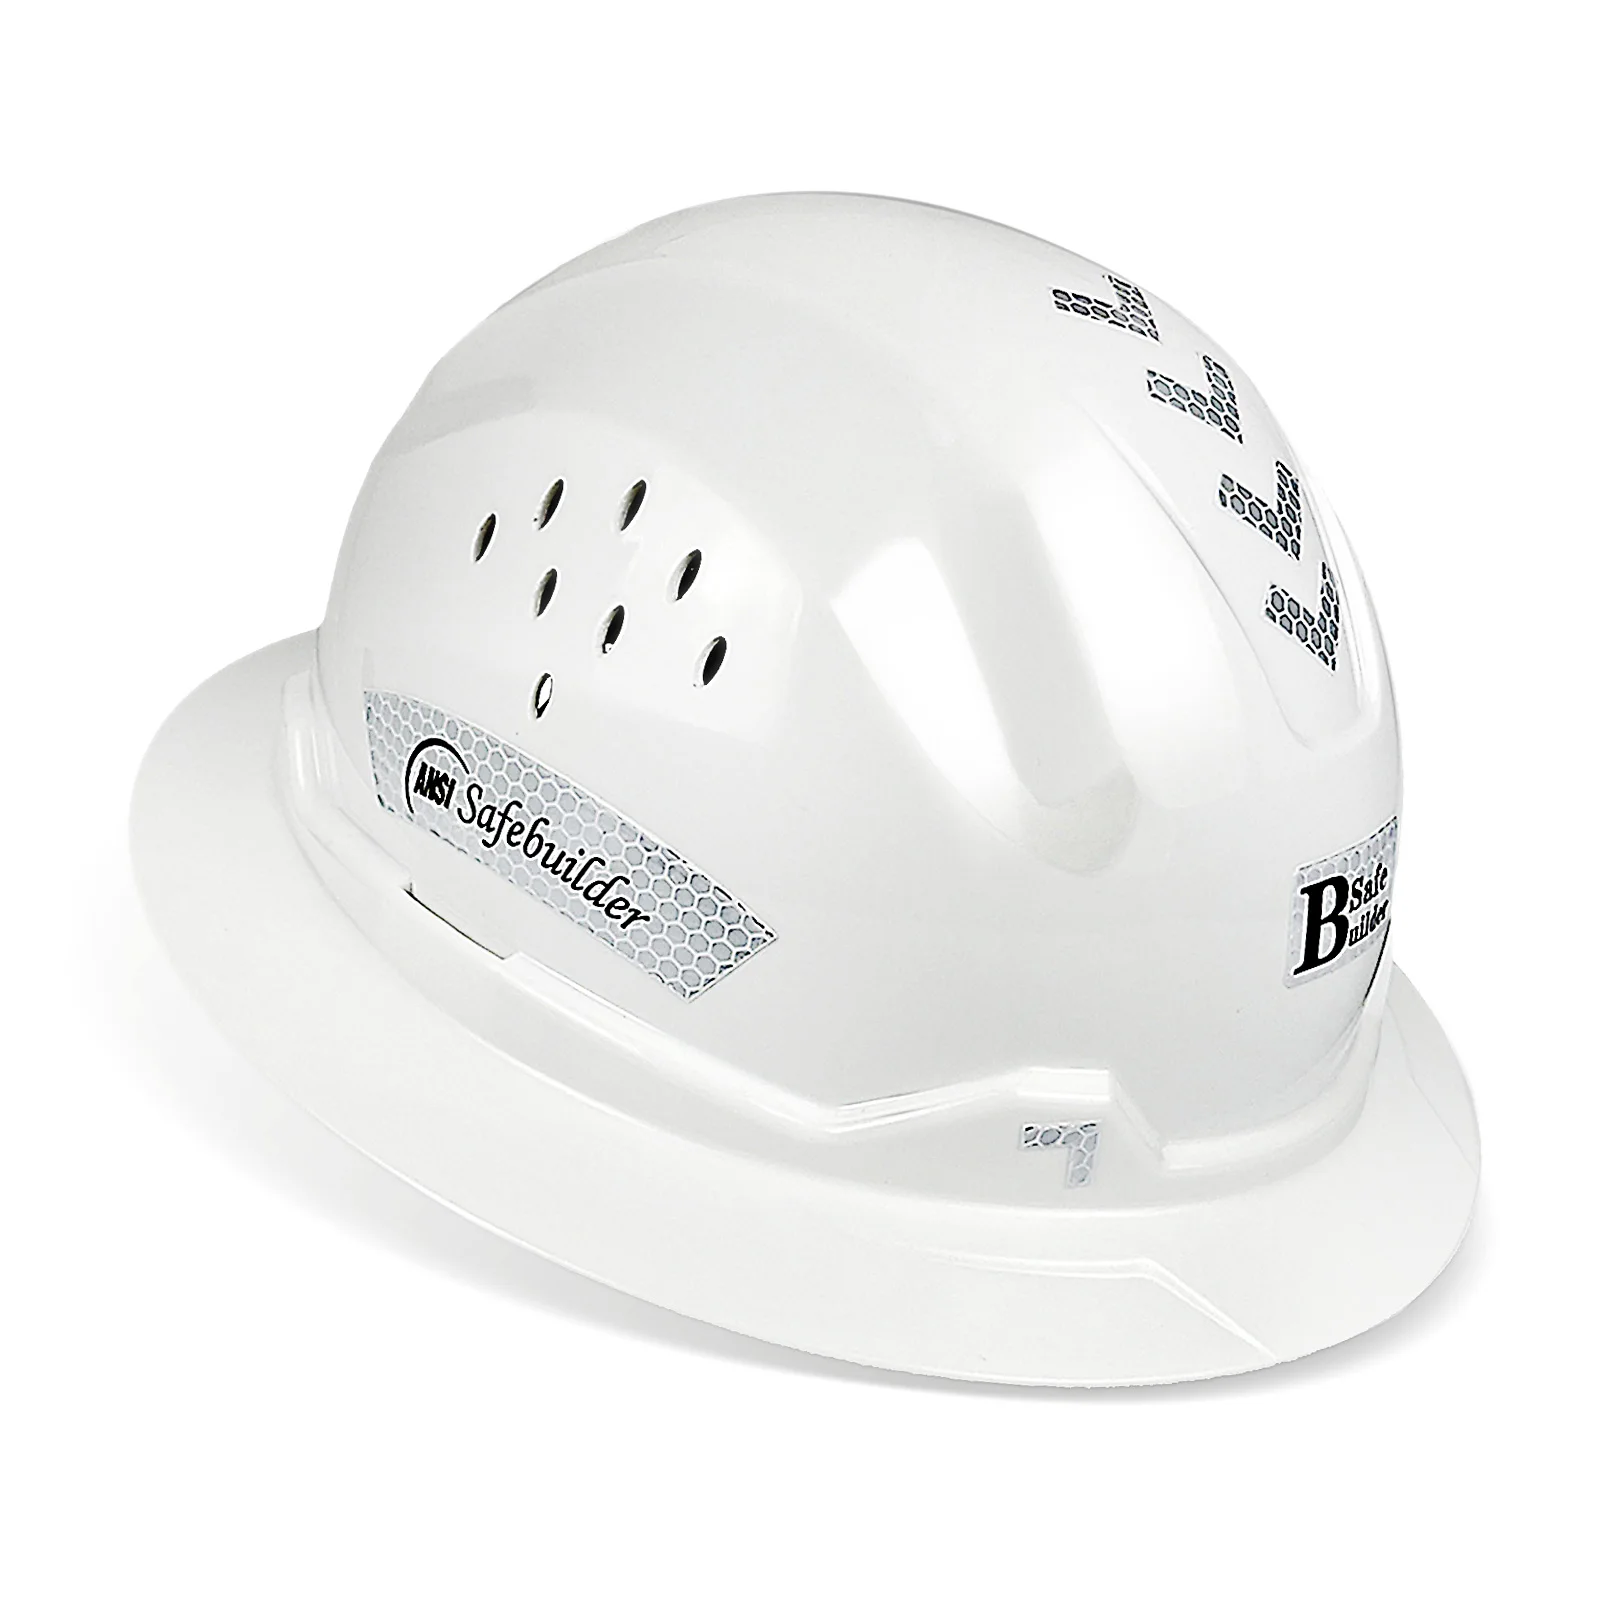 Plný krempou natvrdo čepice prodyšné bezpečnosti helma vypuštěné ANSI Z89.1 schváleno lehoučké natvrdo klobouky staveniště & průmyslový